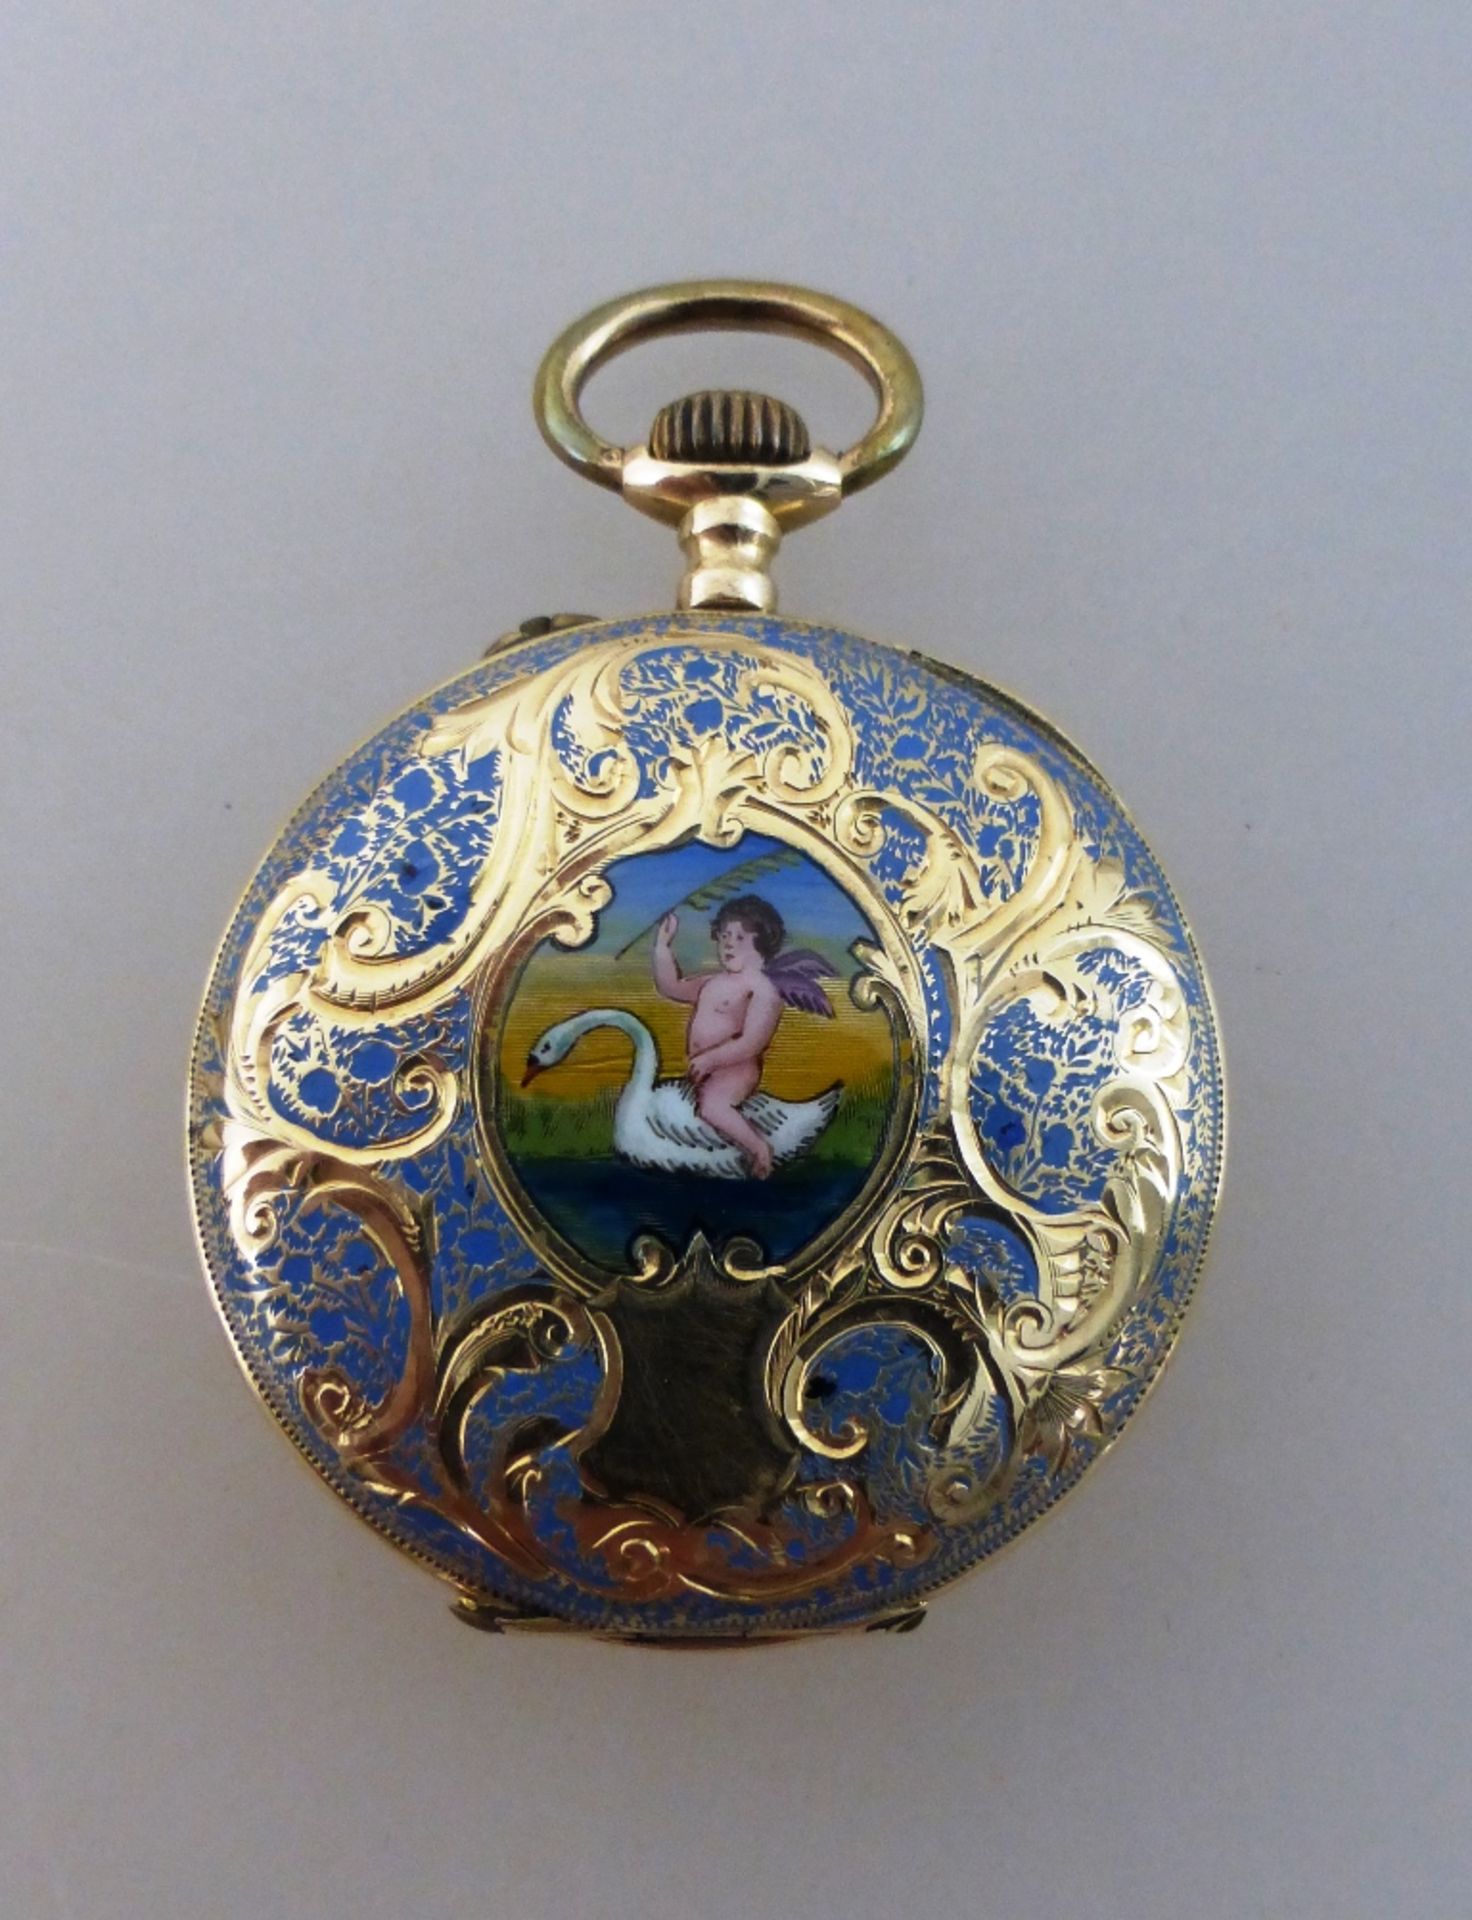 Gold-Emaille Damentaschenuhr, graviertes, mit emailliertem Blumendekor verziertes - Image 2 of 2